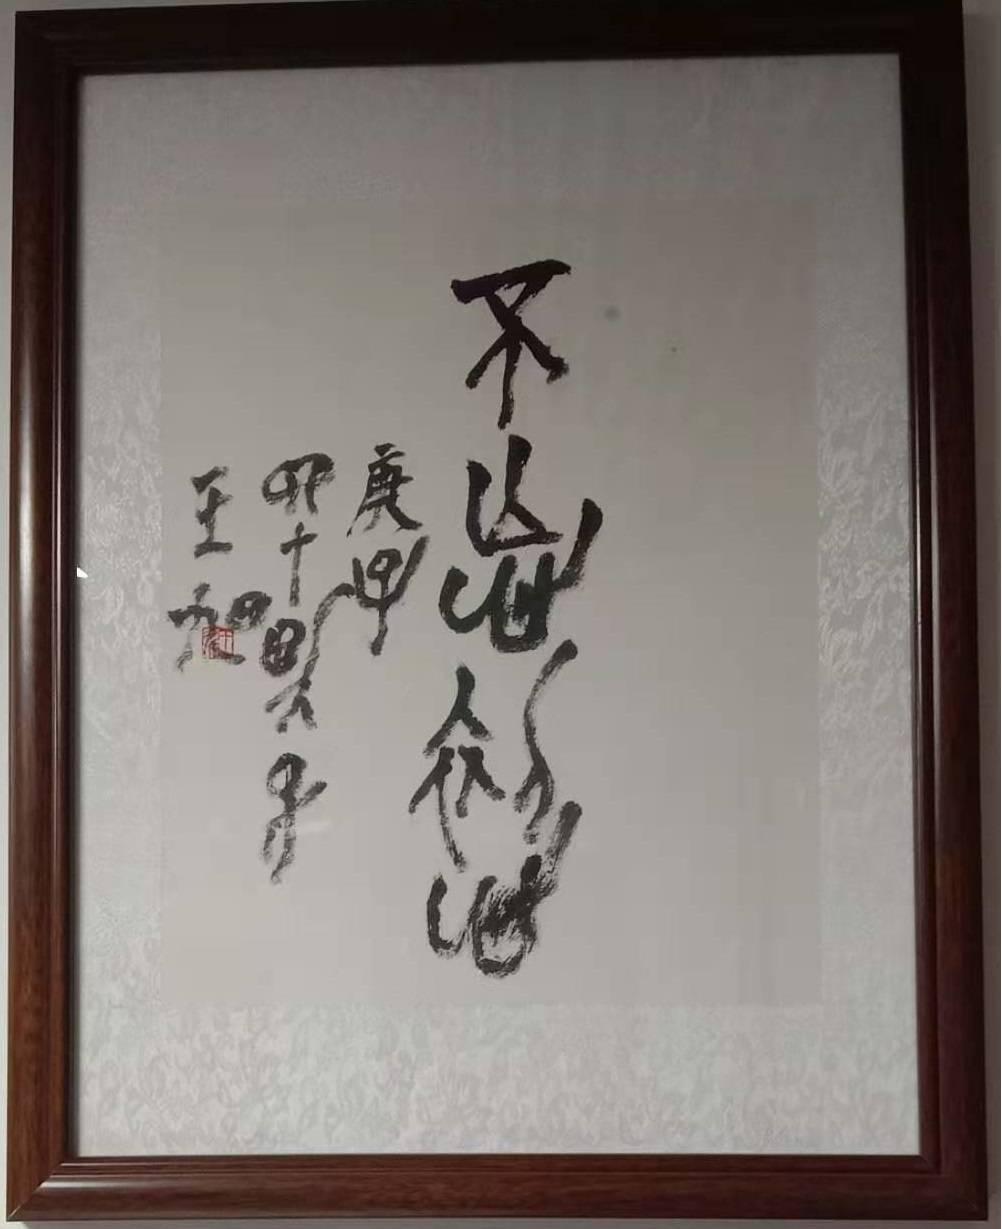 故宫学院中国画研究院学者,《崔如琢评传》作者王旭书法,绘画作品